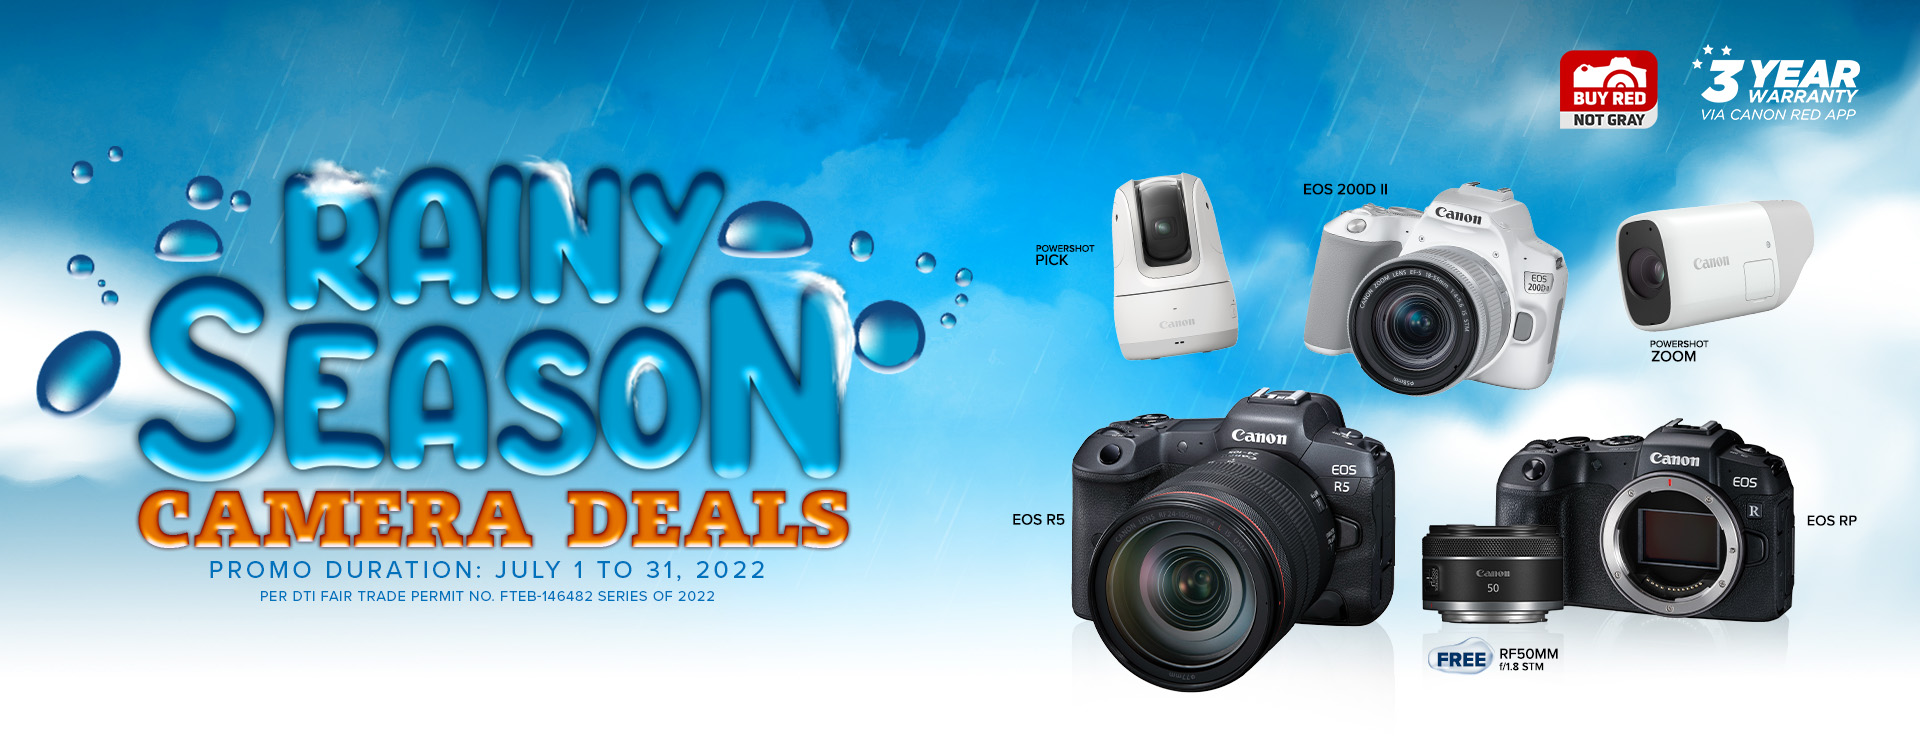 Canon Rainy Season Camera Deals